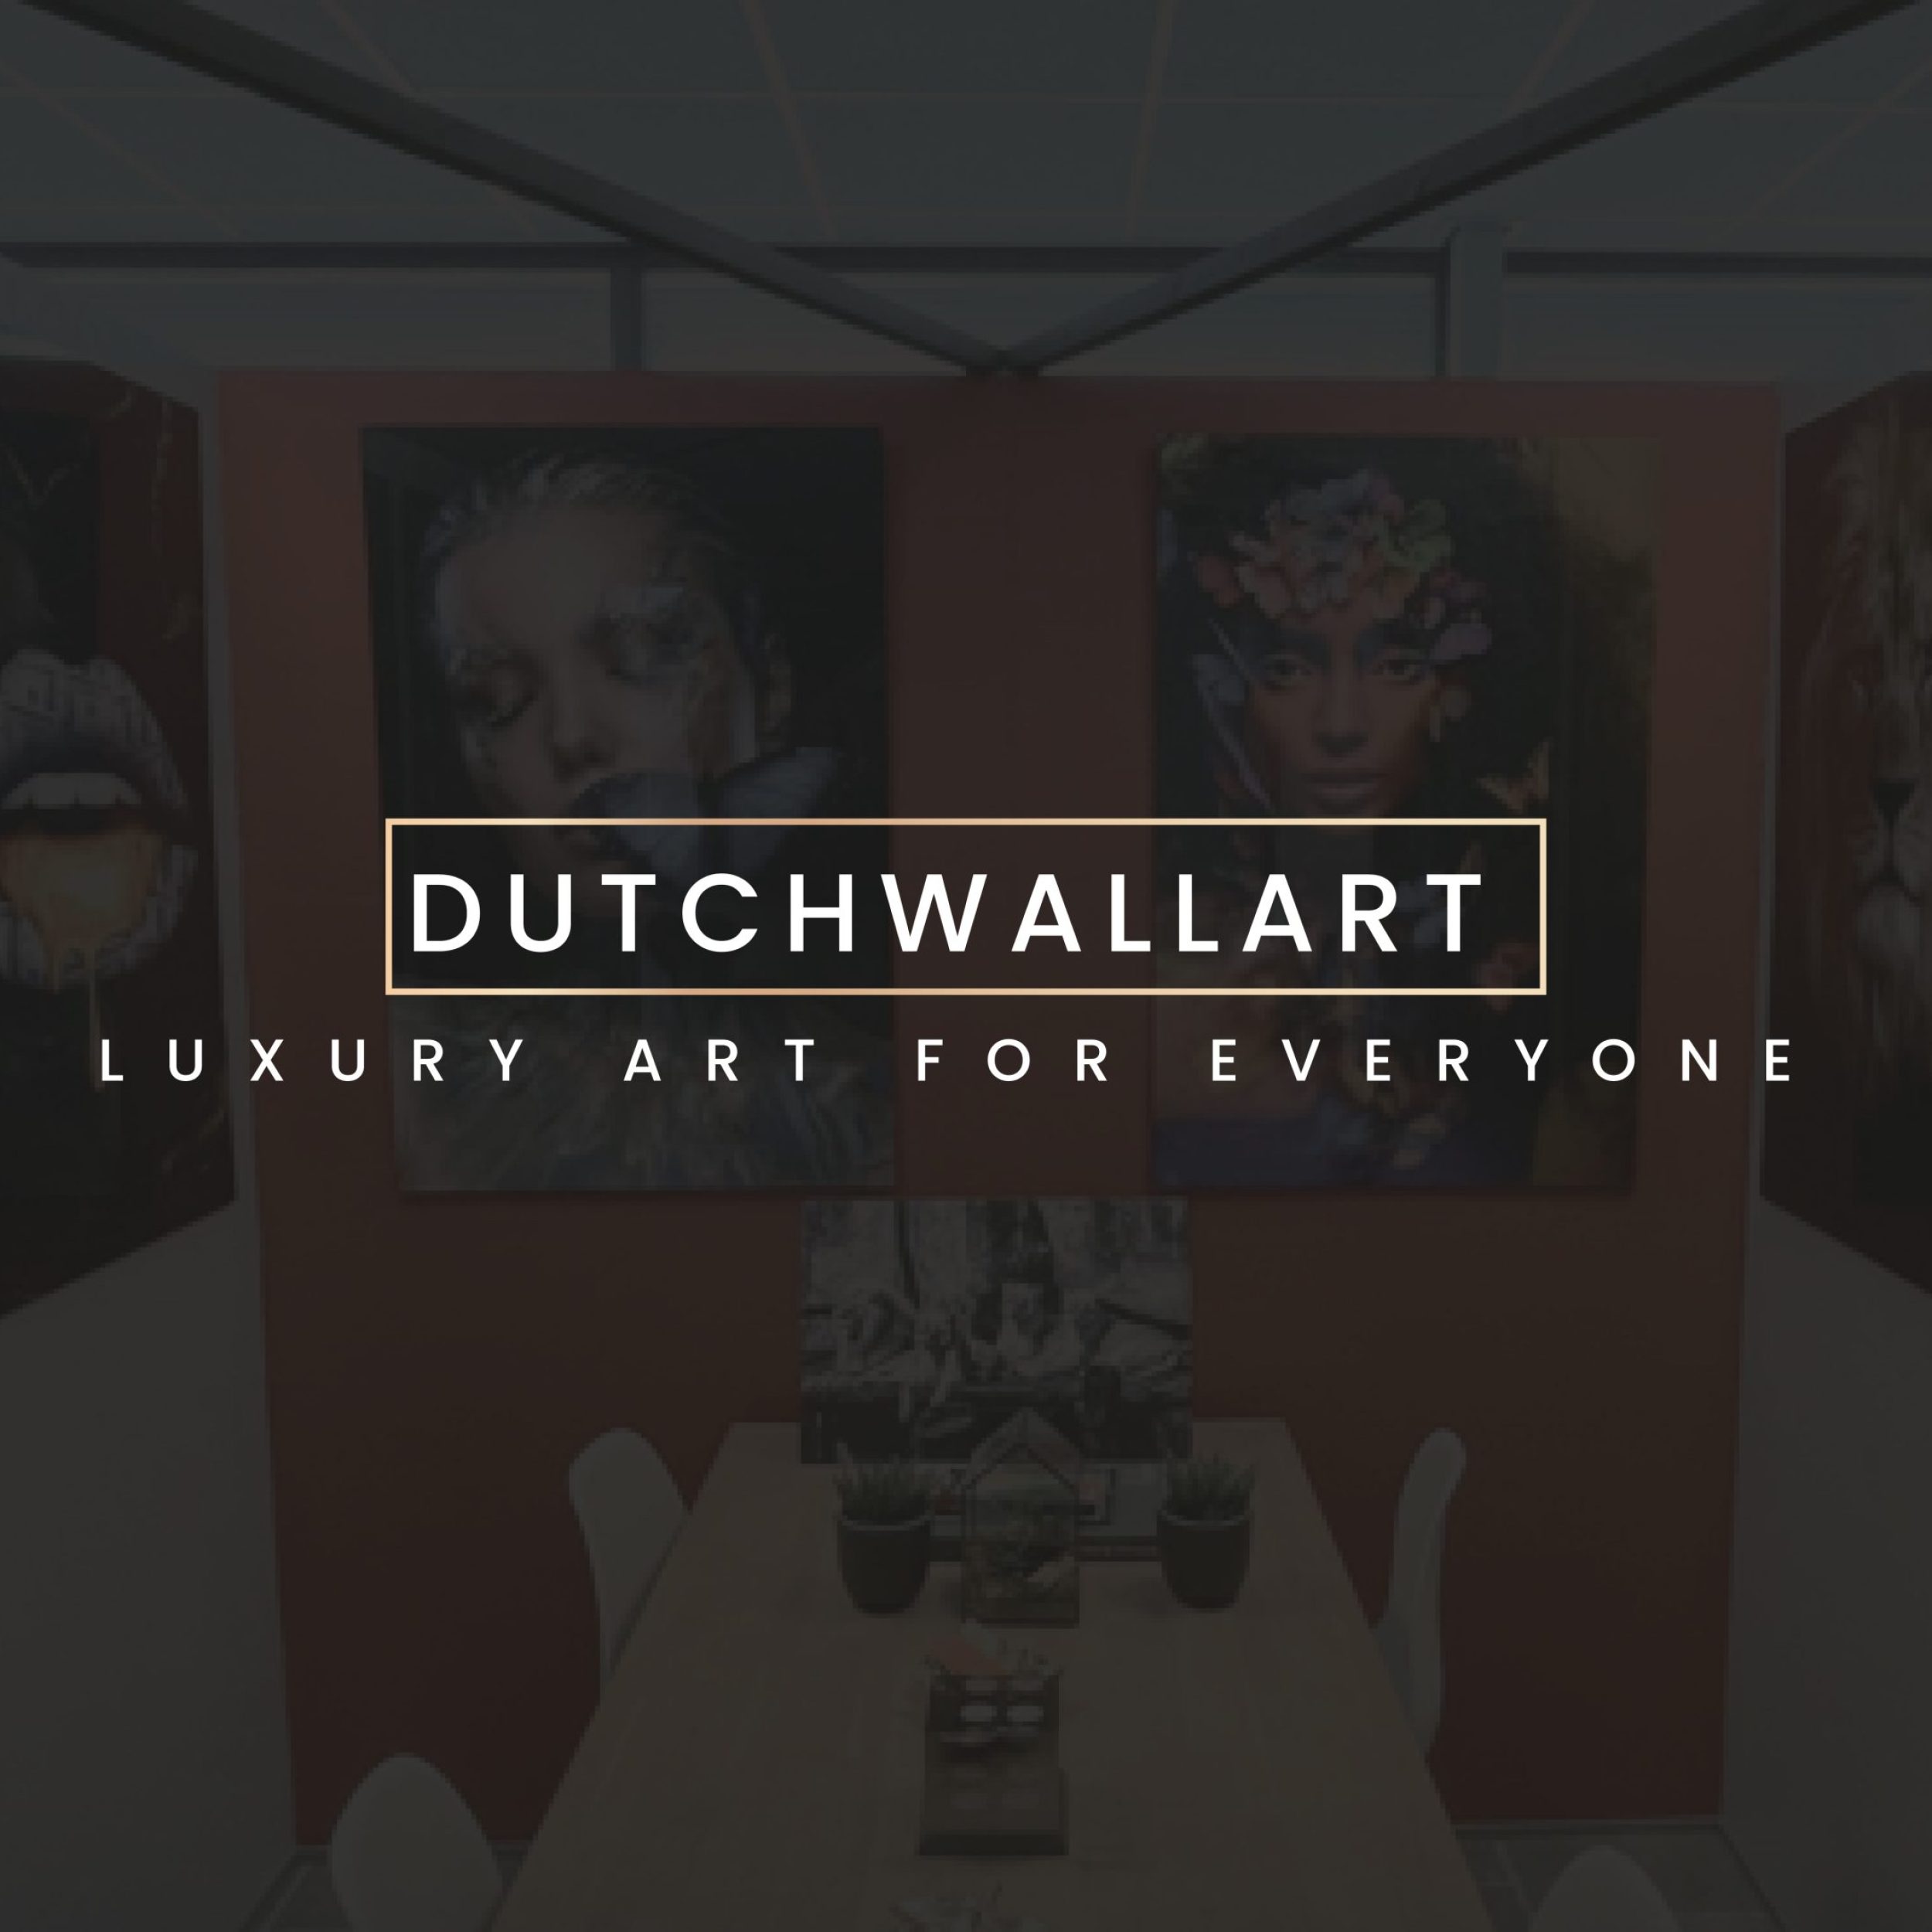 Dutch Wall Art Office